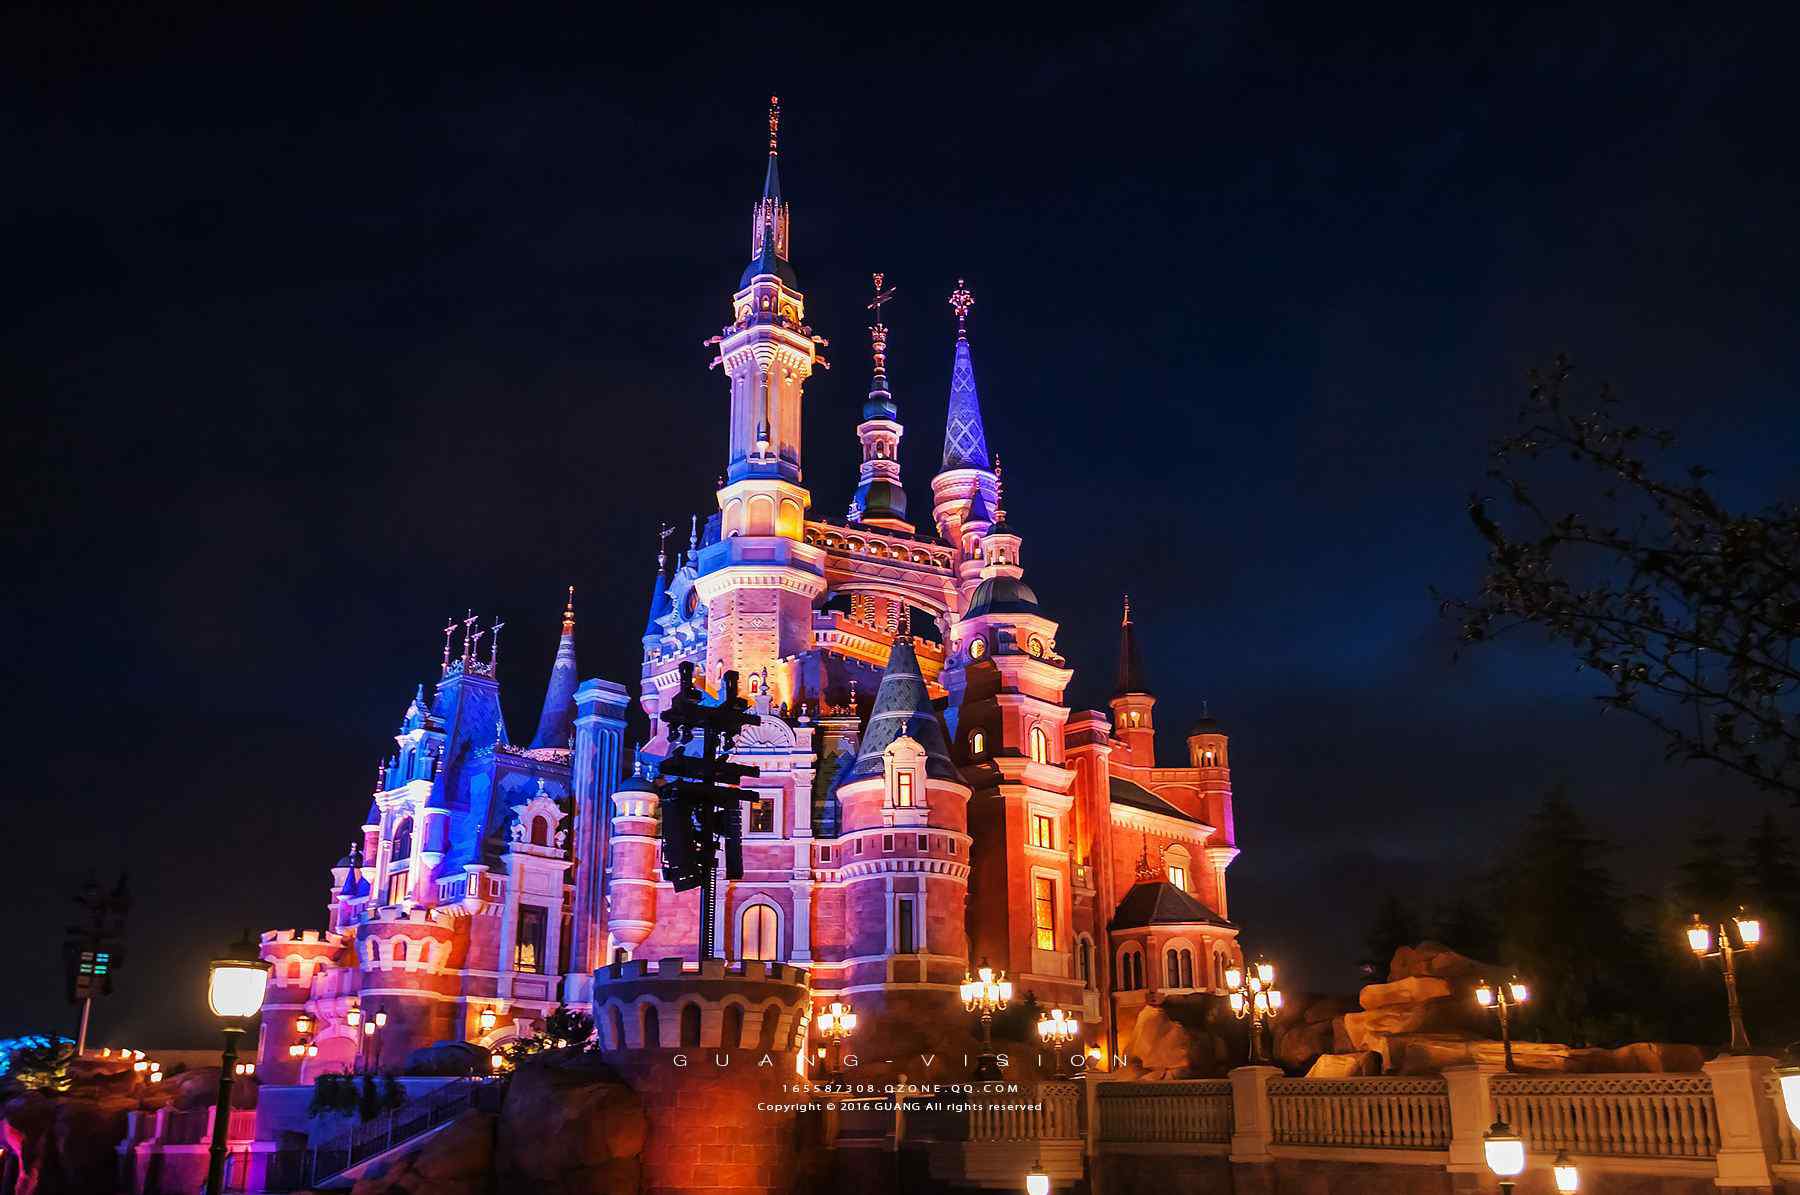 迪士尼城堡微信背景图 迪士尼城堡背景图夜晚 迪士尼烟花背景图高清